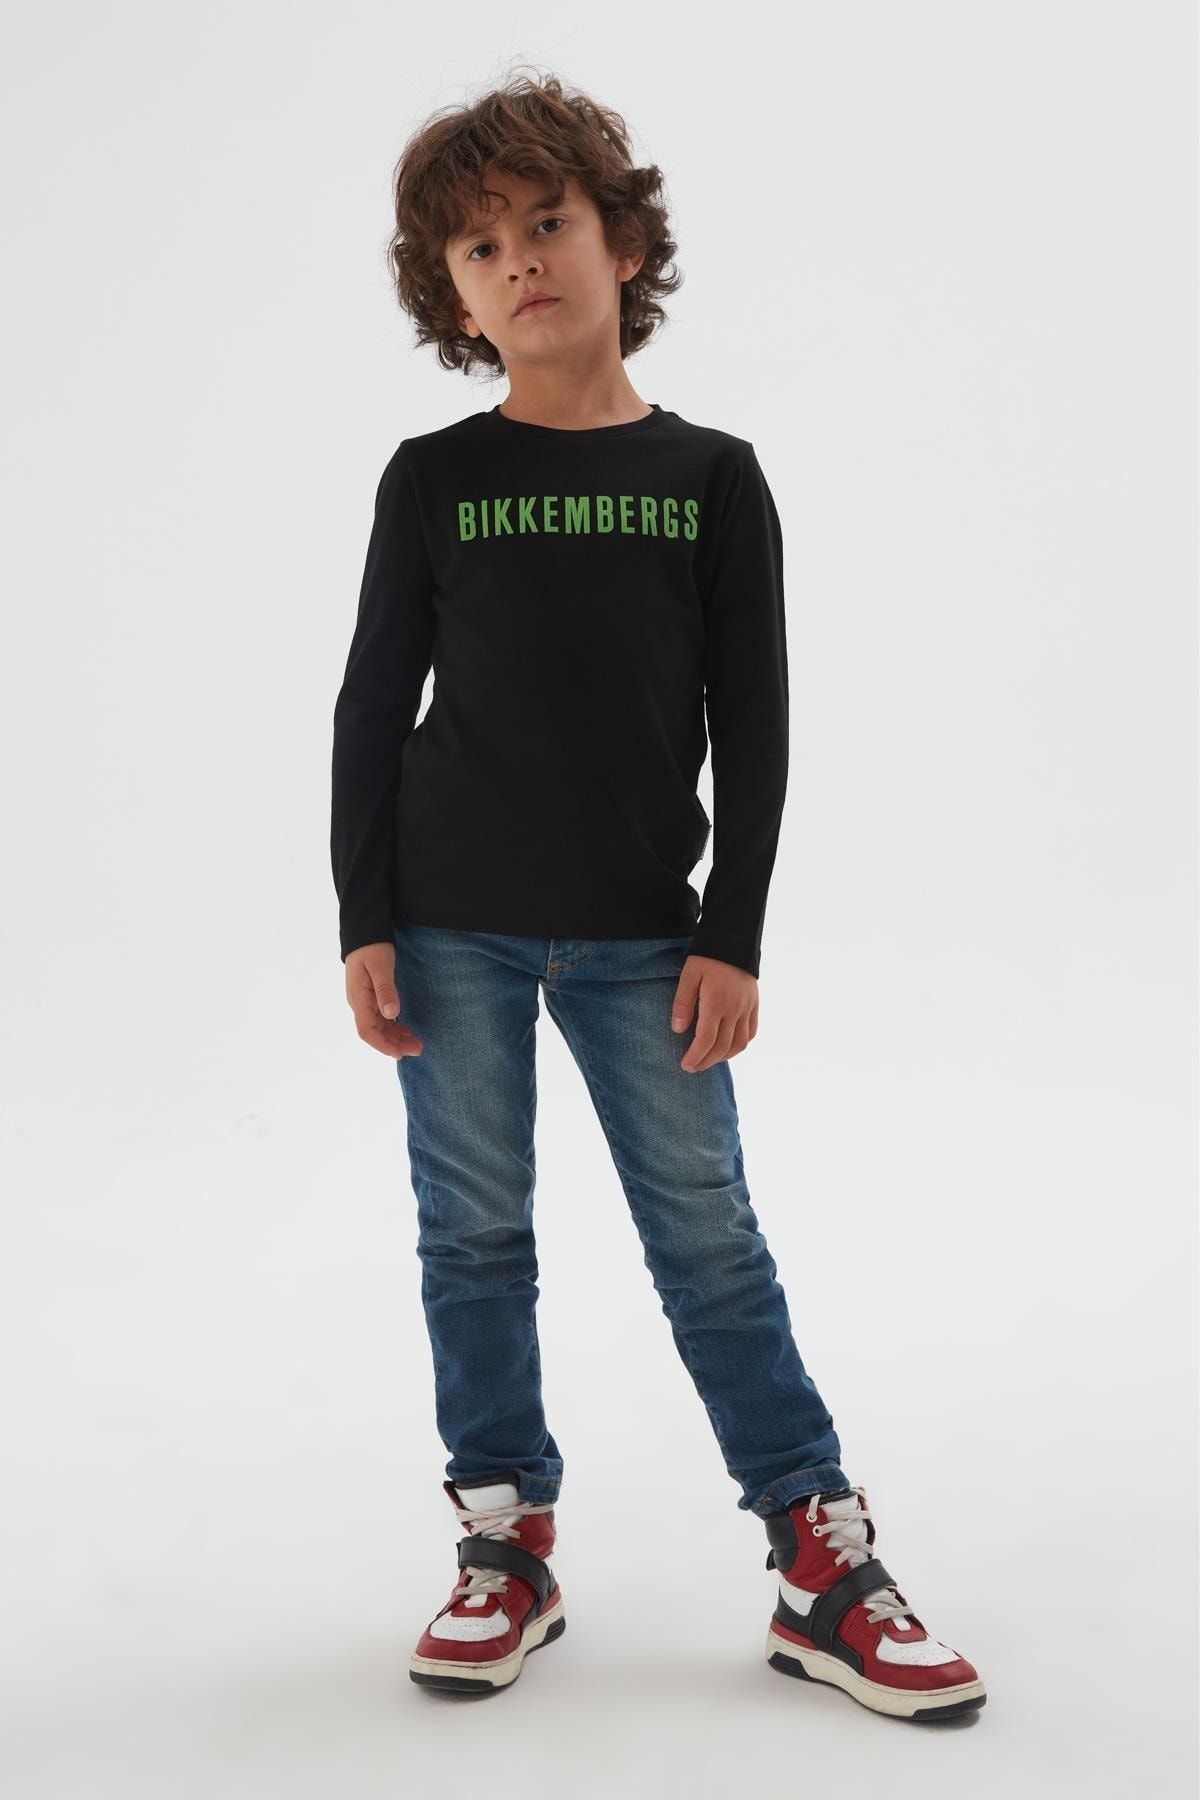 Bikkembergs Bg Store Erkek Çocuk T-shirt 22fw0bk1190